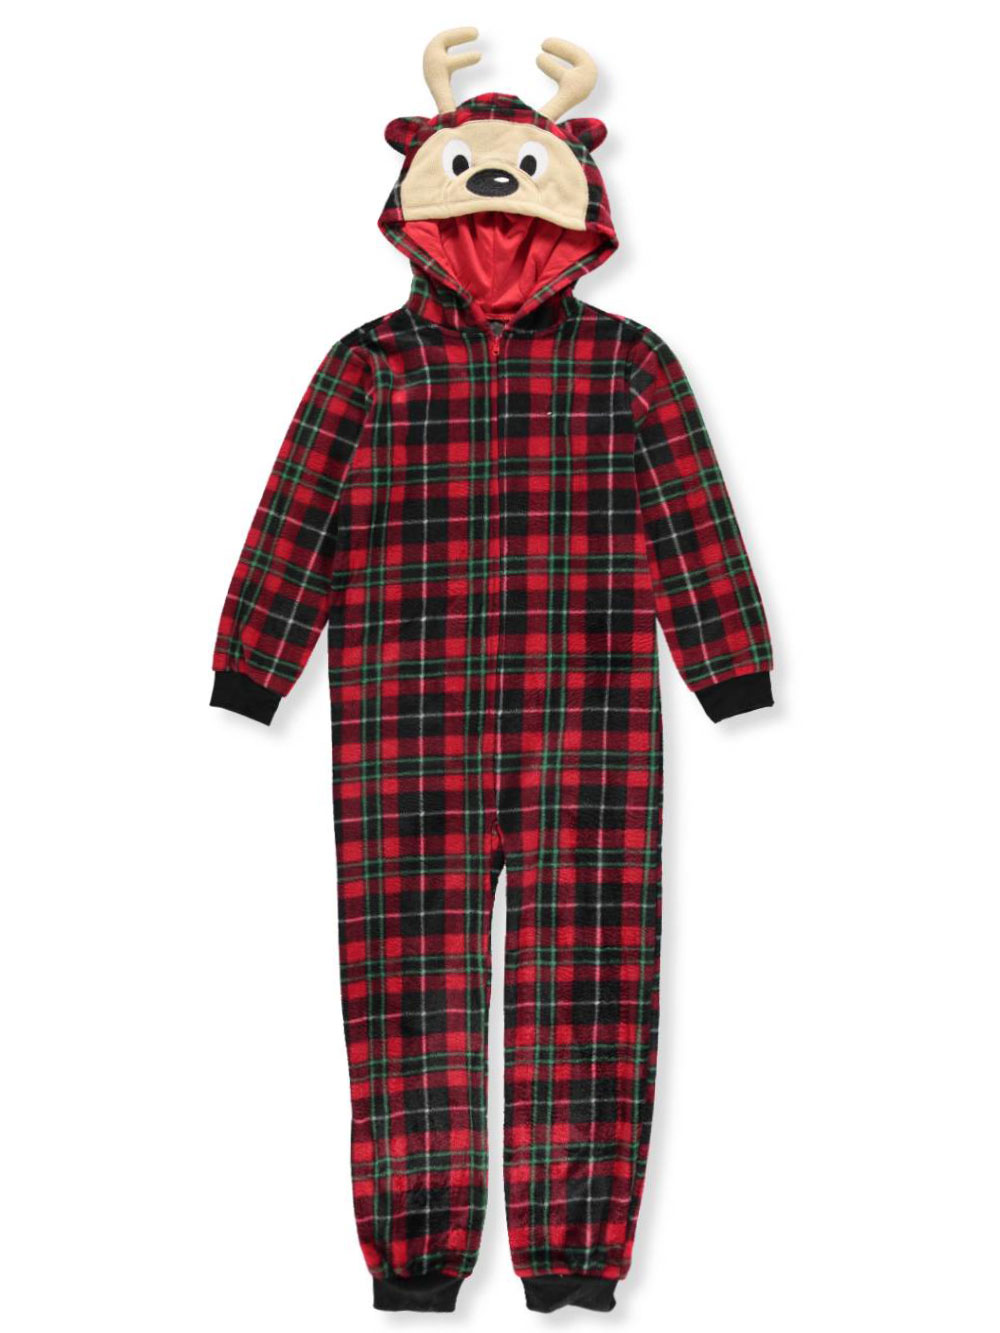 Sleep On It Boys Micro Fleece Onesie Pajamas with Character Hood